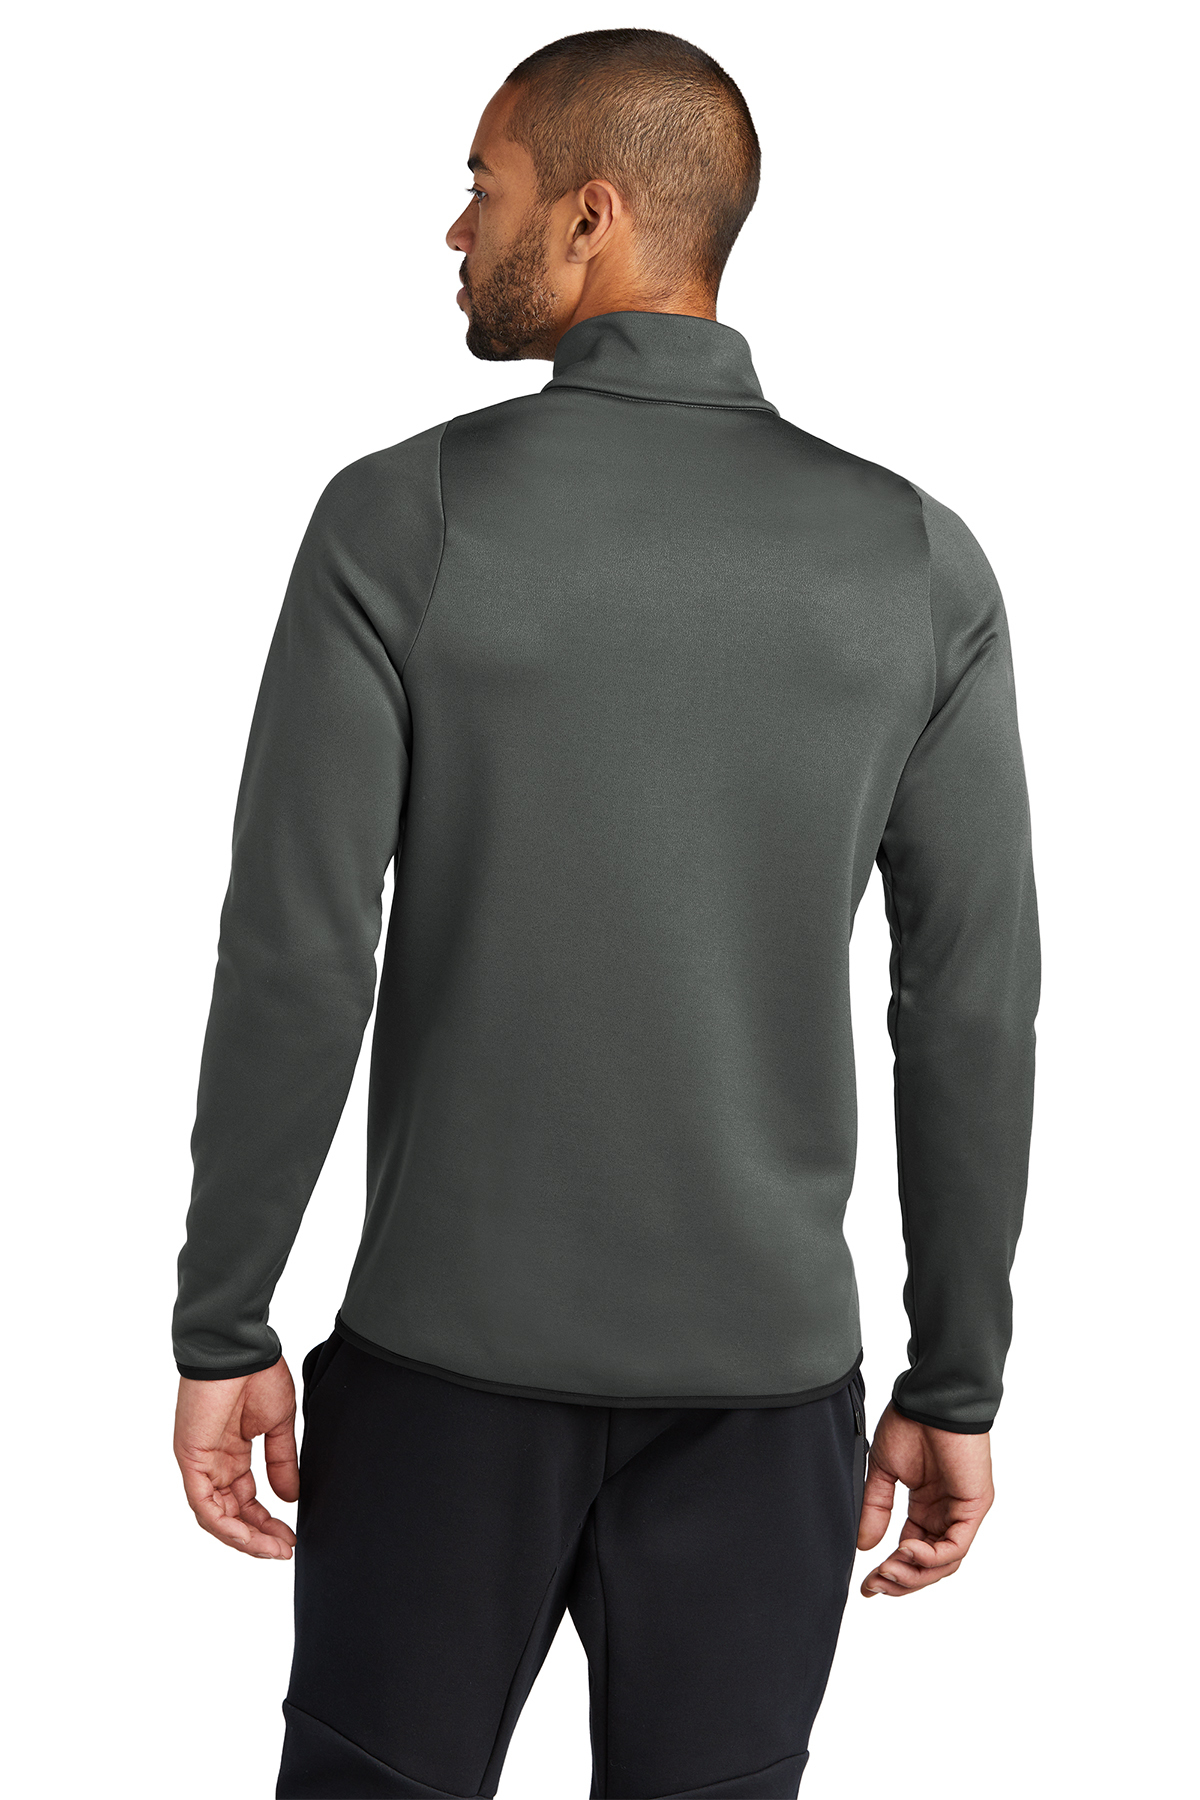 Nike Therma-FIT 1/4-Zip Fleece | Product | SanMar